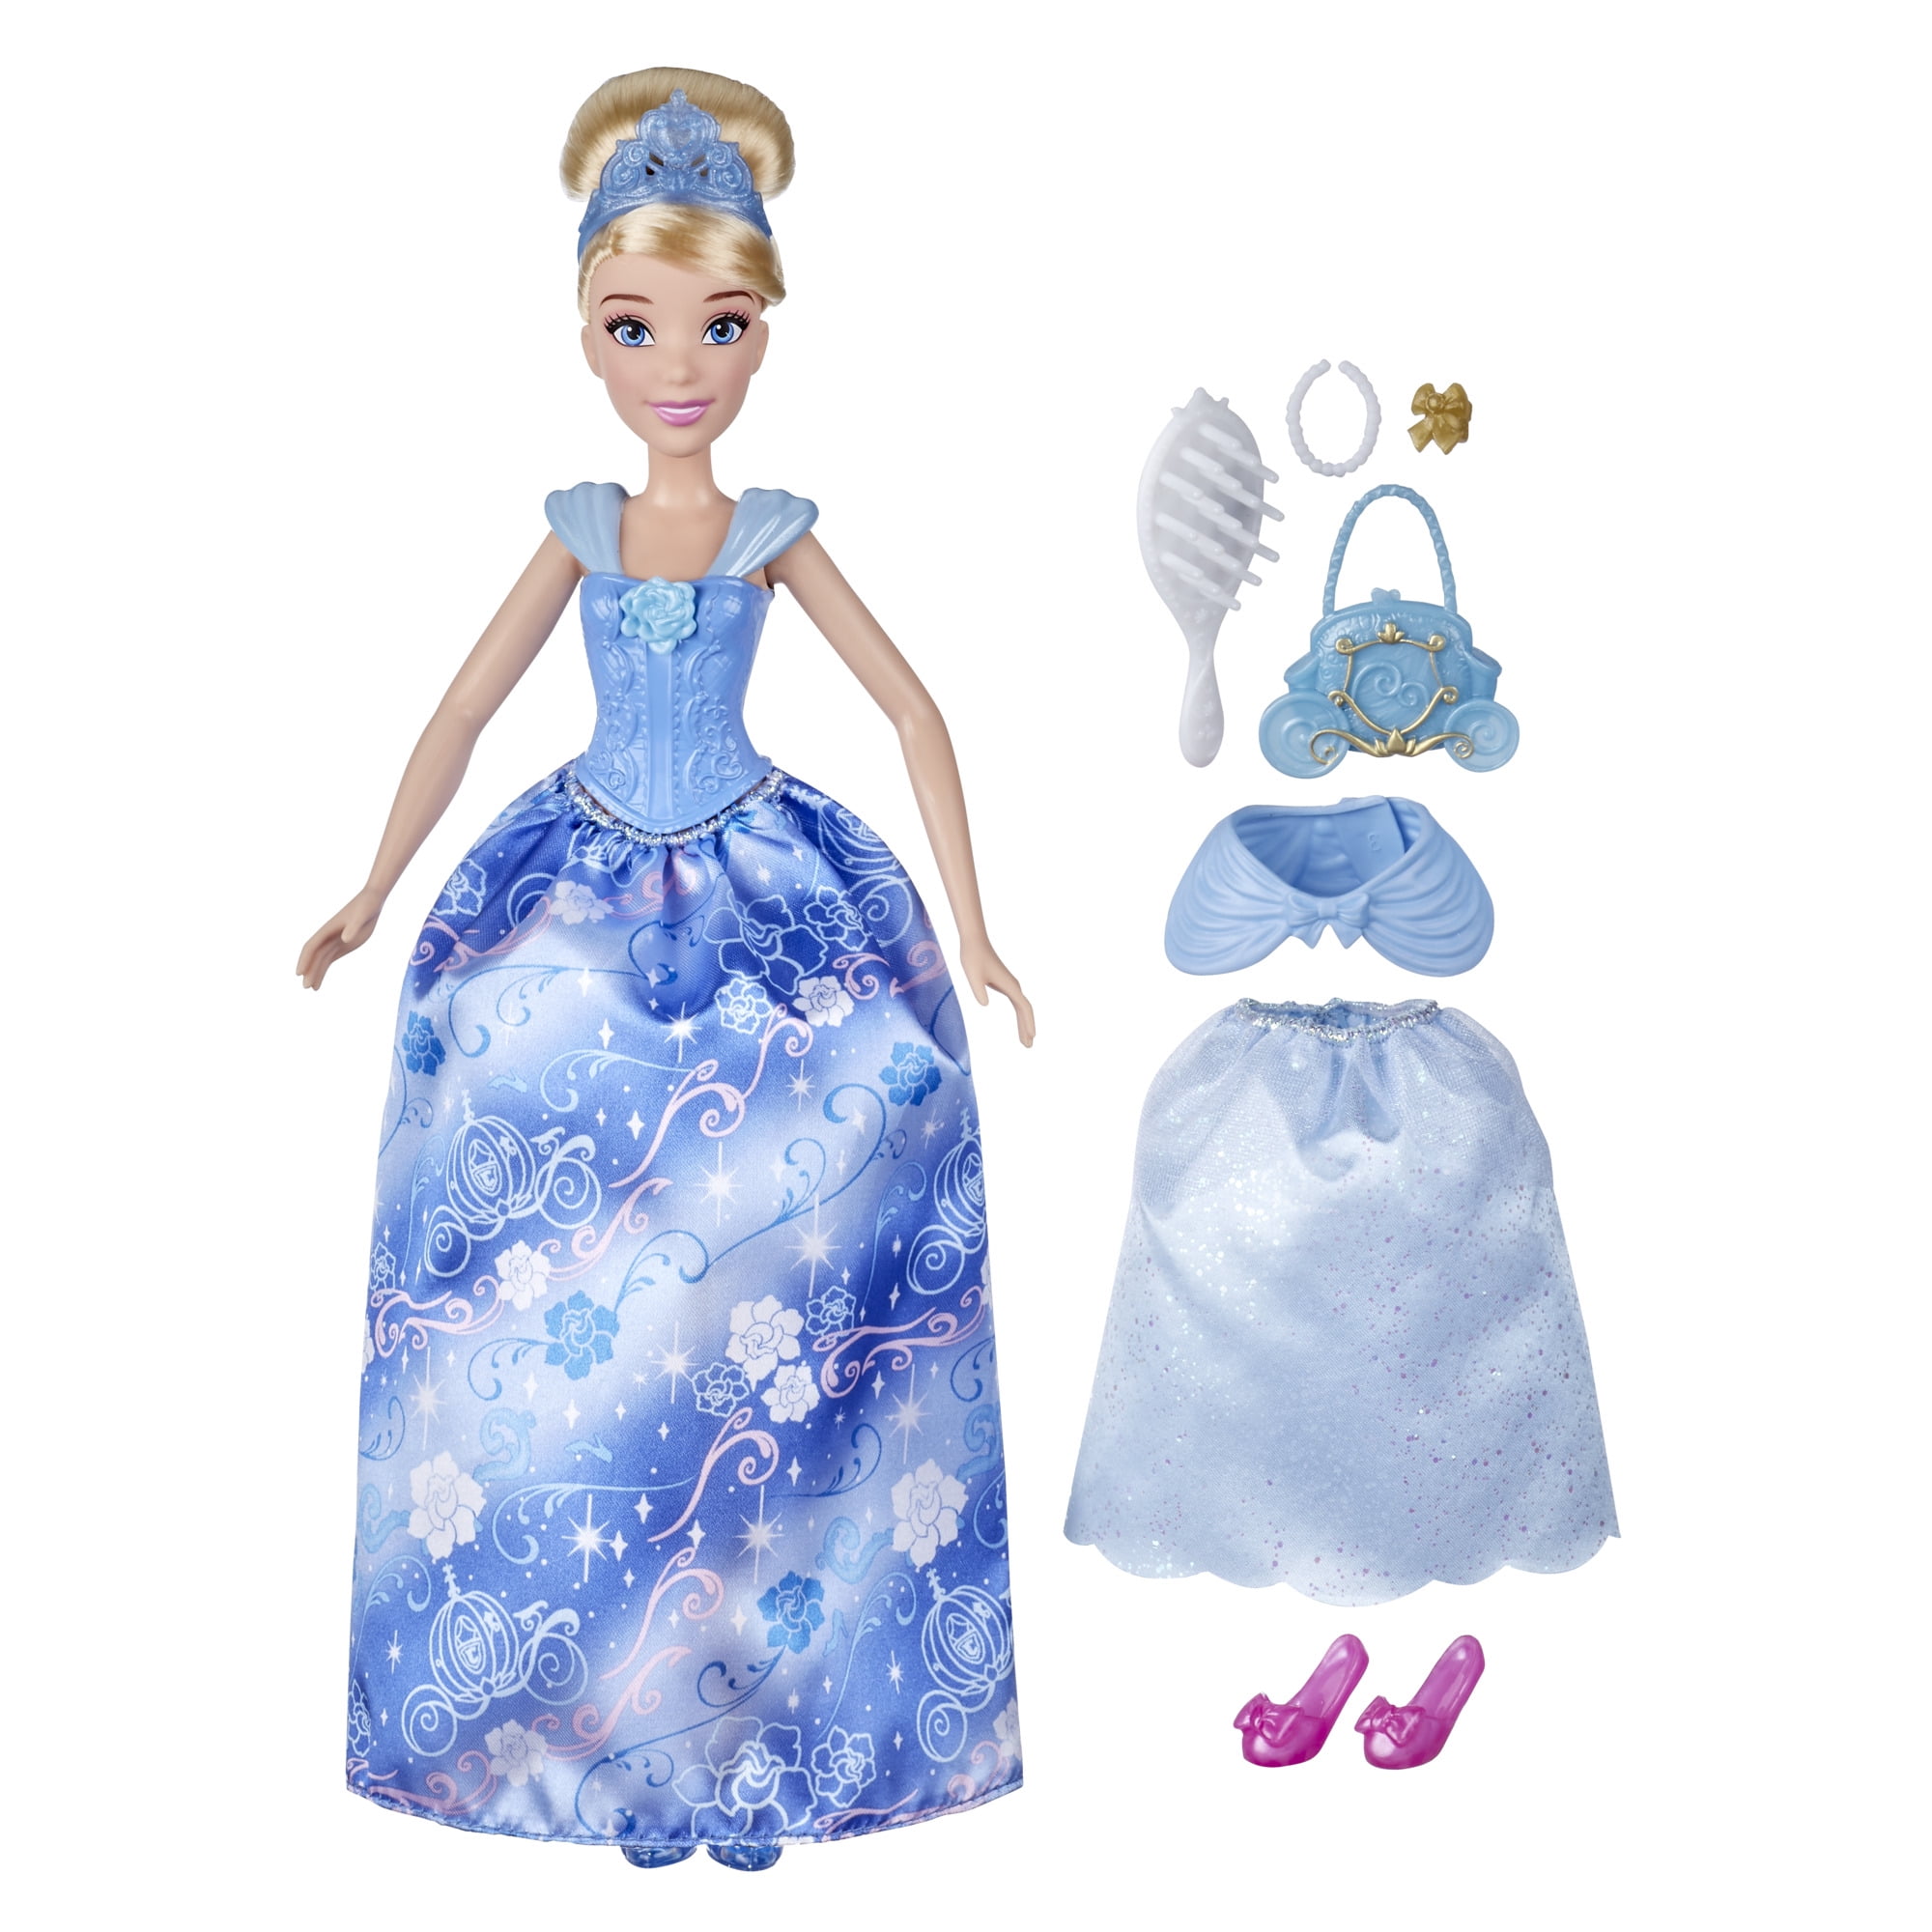 New Disney Princess Figure Series 4 Tiara Collection Cinderella Pink Dress